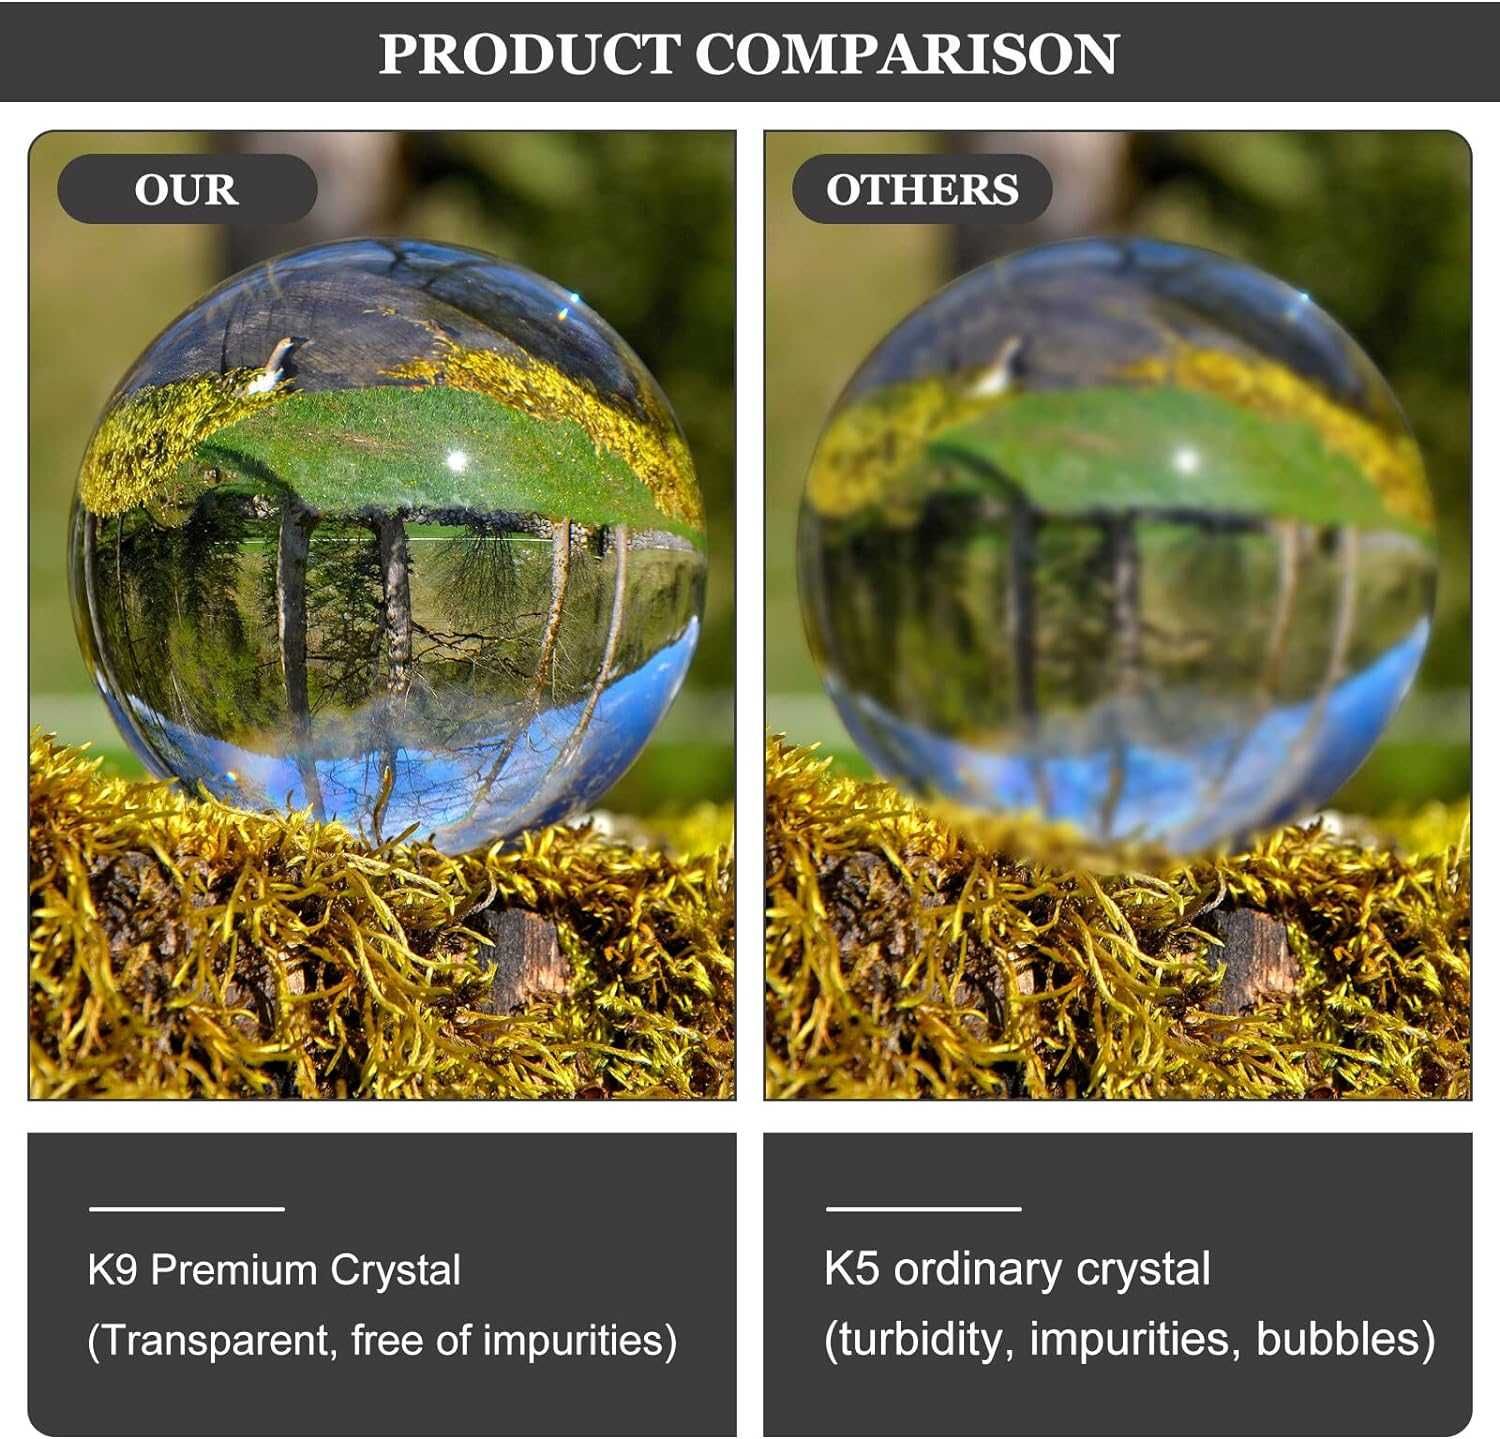 Bola de vidro fotografia esfera refletora cristal efeitos distorções